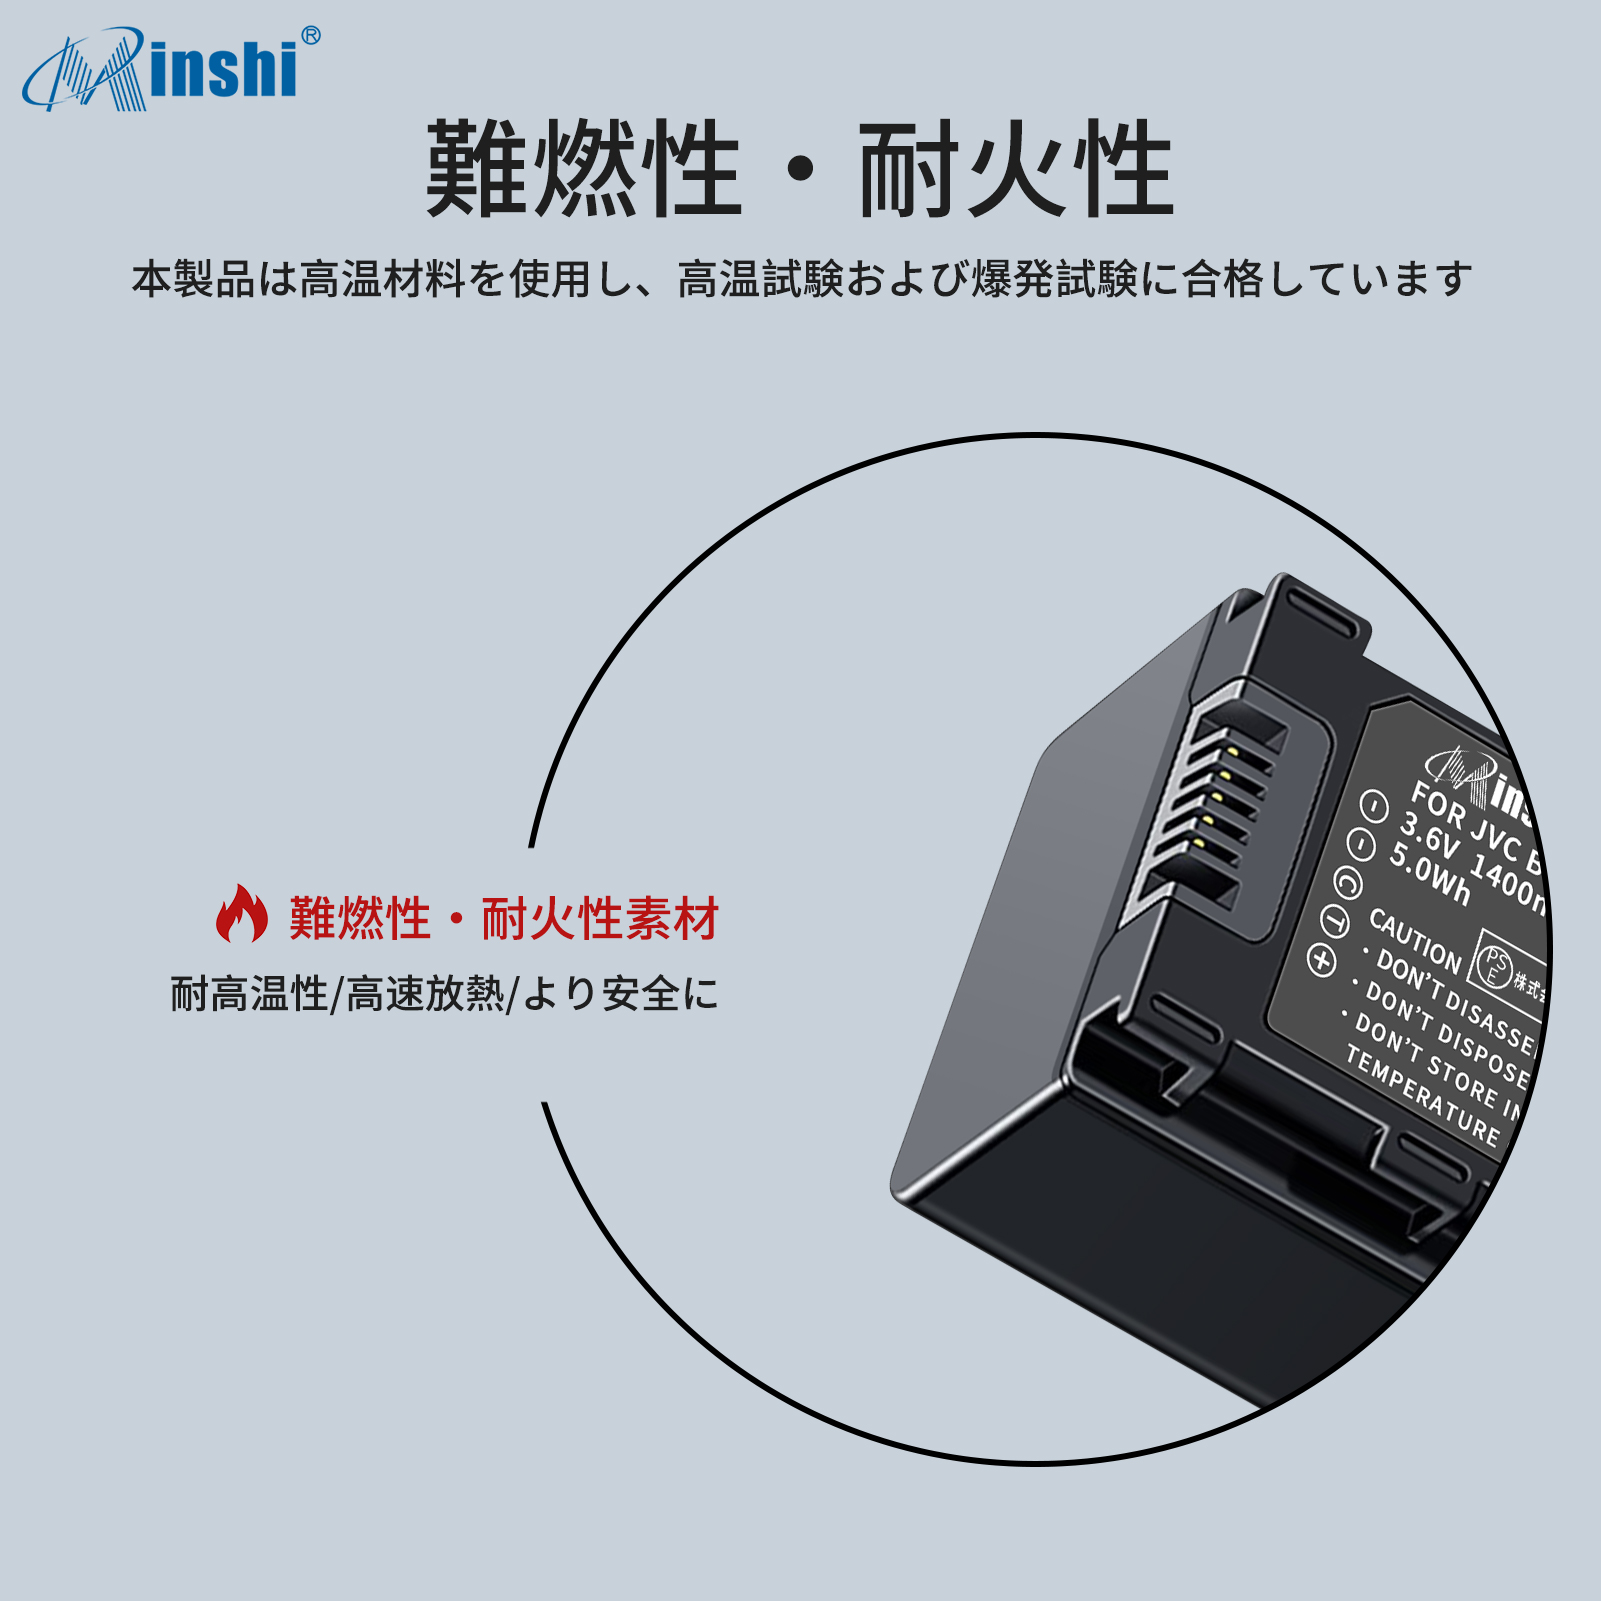 「猫がイキイキ」 【２個セット】 minshi VICTOR BN-VG121 GZ-MG980 対応 互換バッテリー 1400mAh 高品質交換用バッテリー